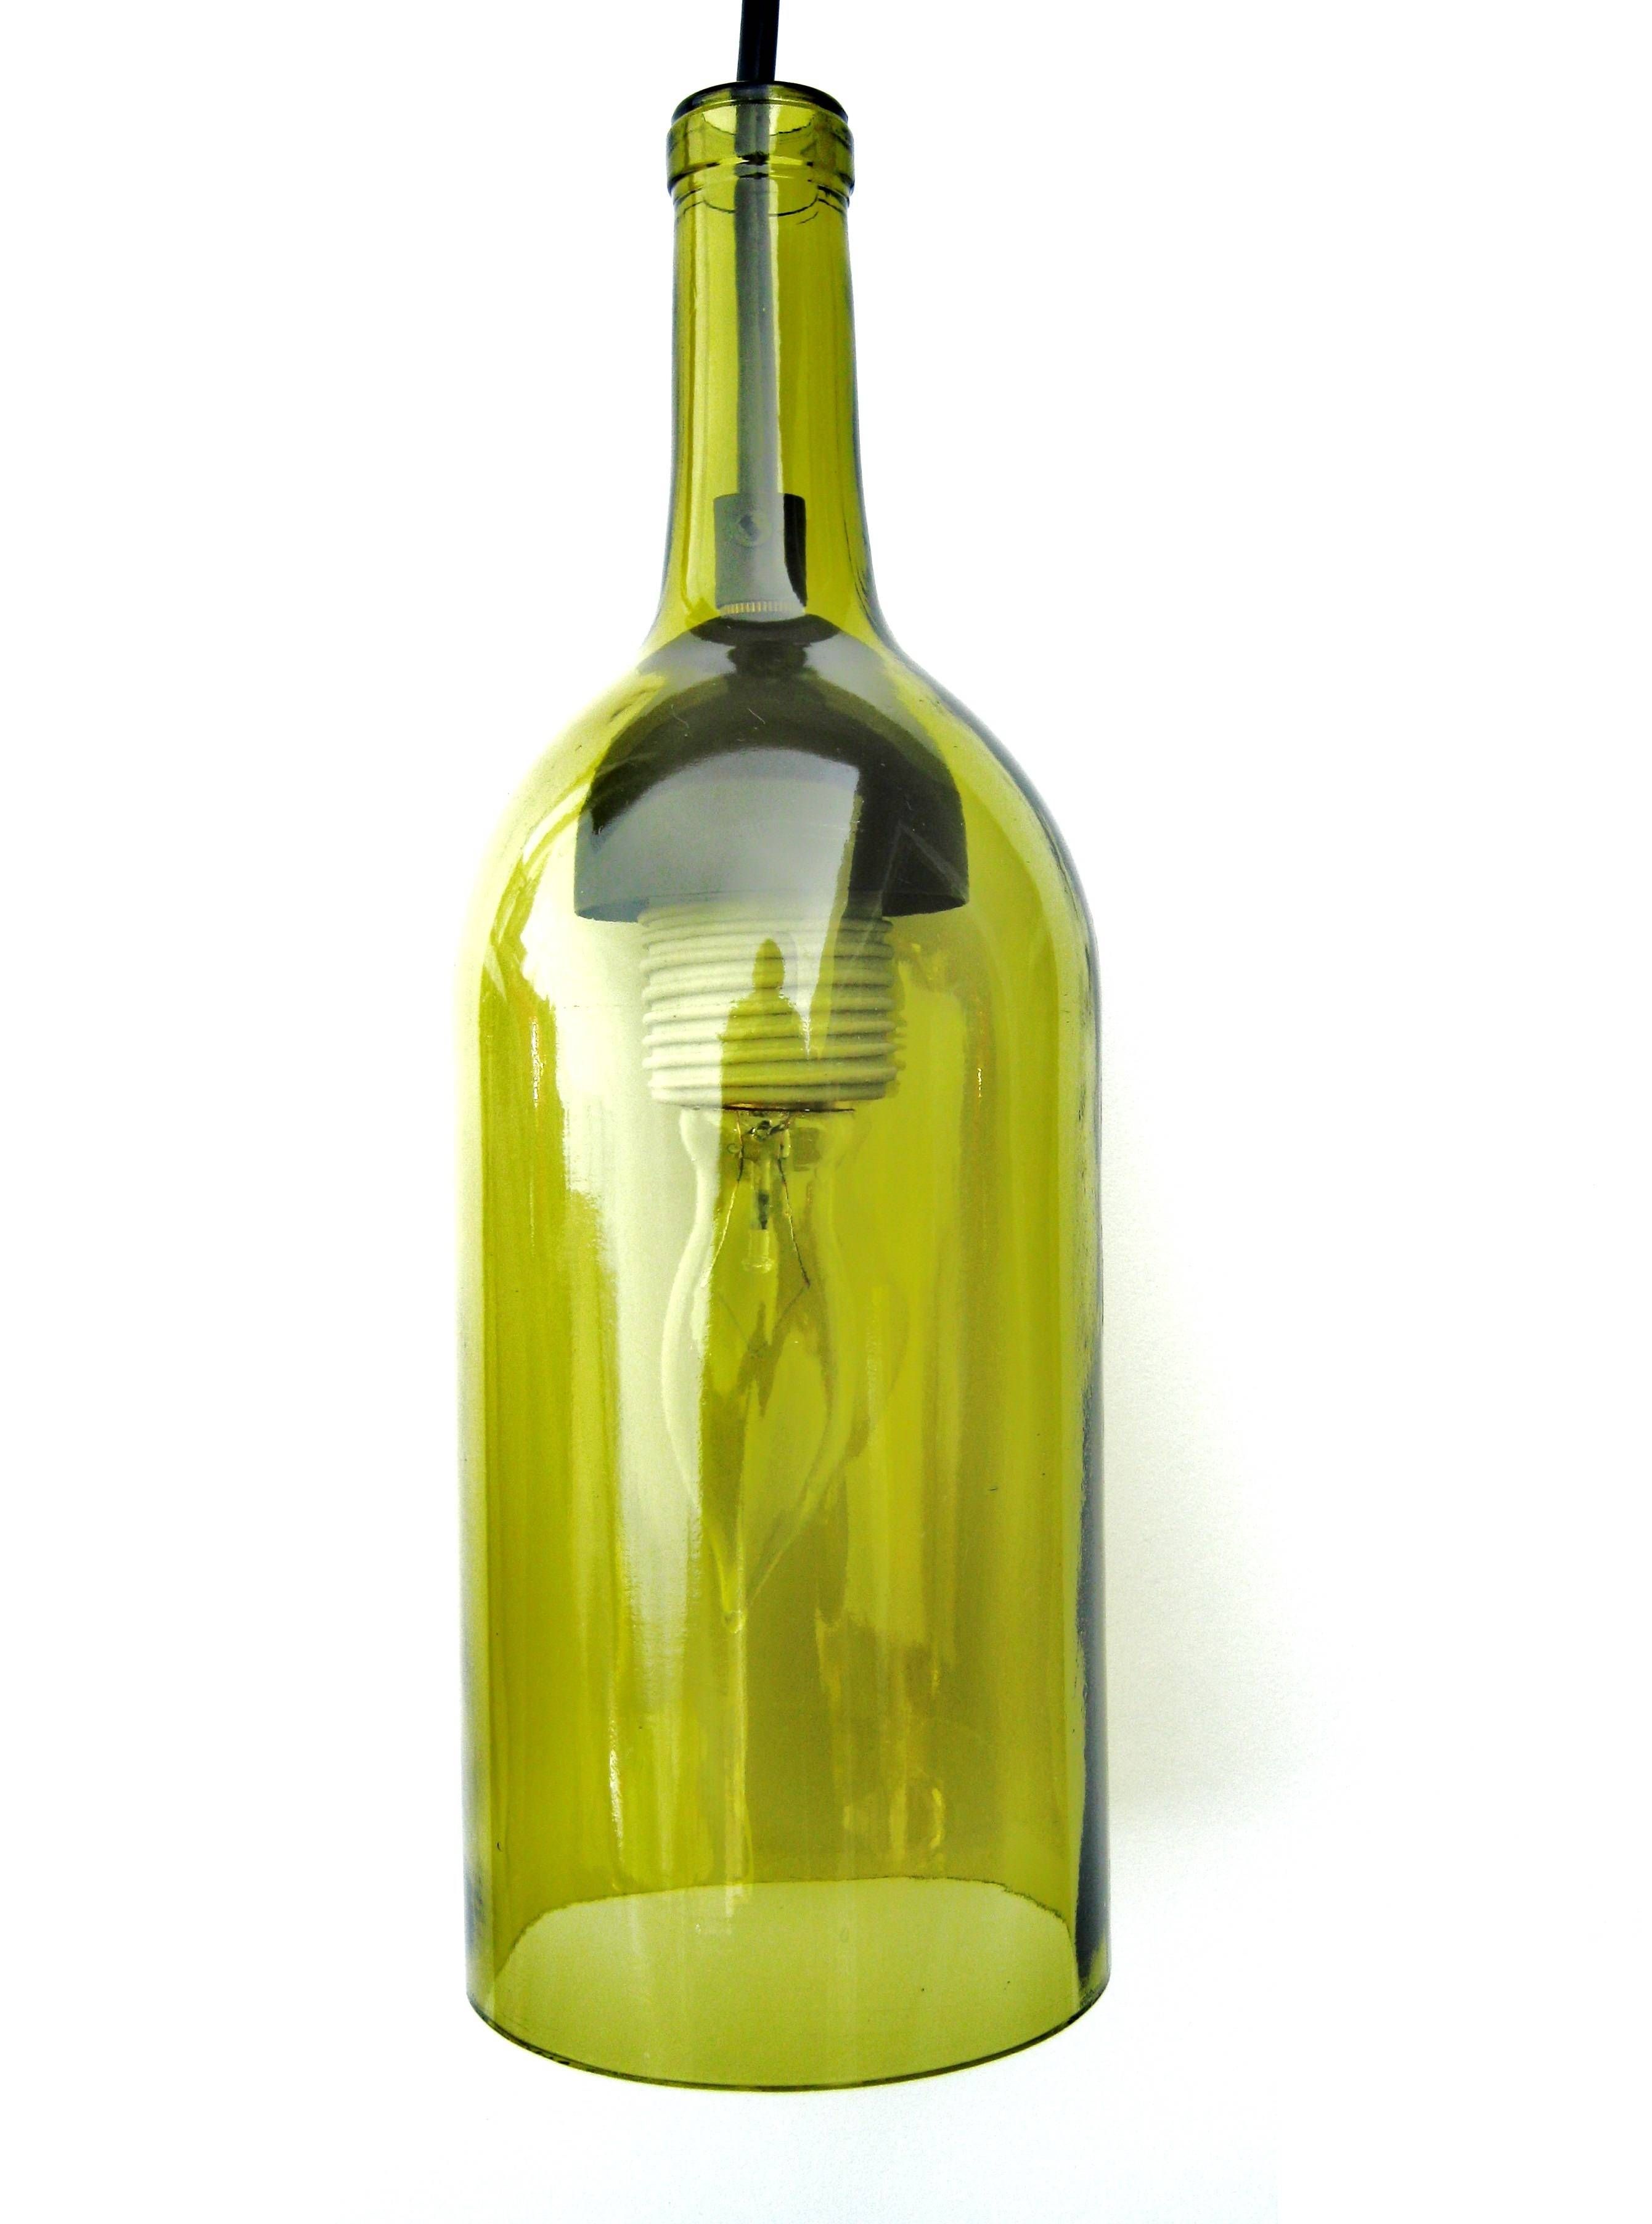 Pendant Light Kit For Wine Bottle | Roselawnlutheran Within Wine Bottle Pendant Light Kits (View 12 of 15)